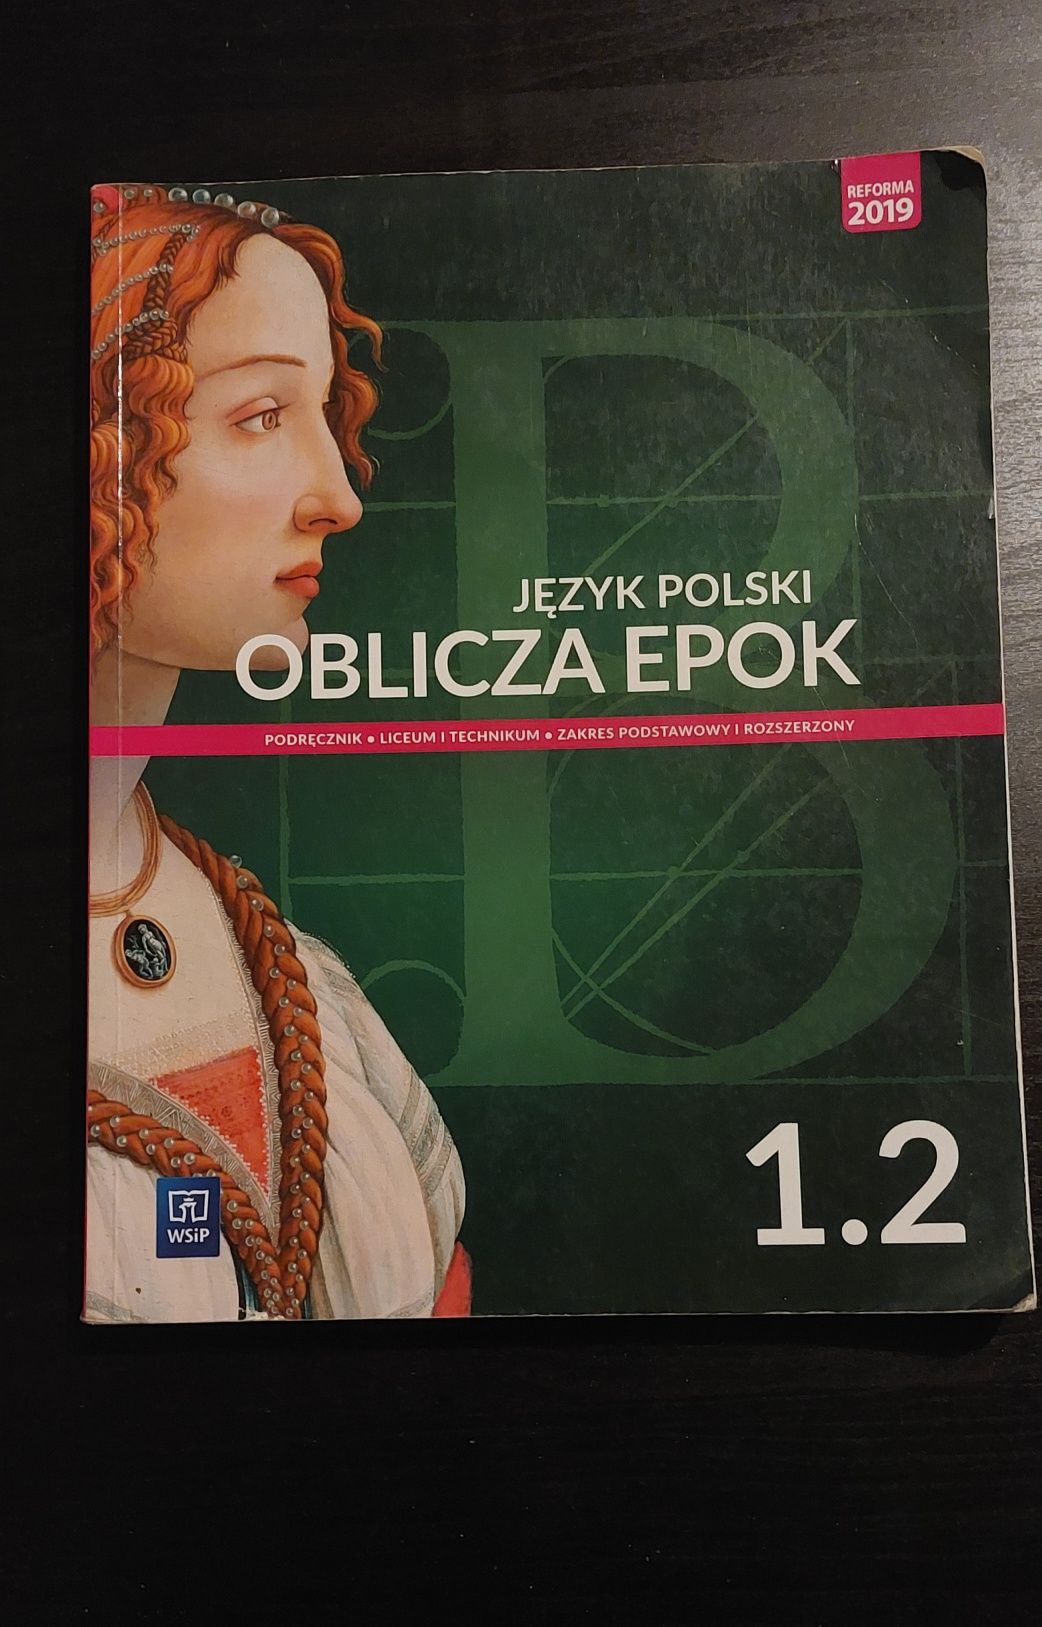 Podręcznik do Języka Polskiego 1.1 oraz 1.2 "Oblicza Epok"